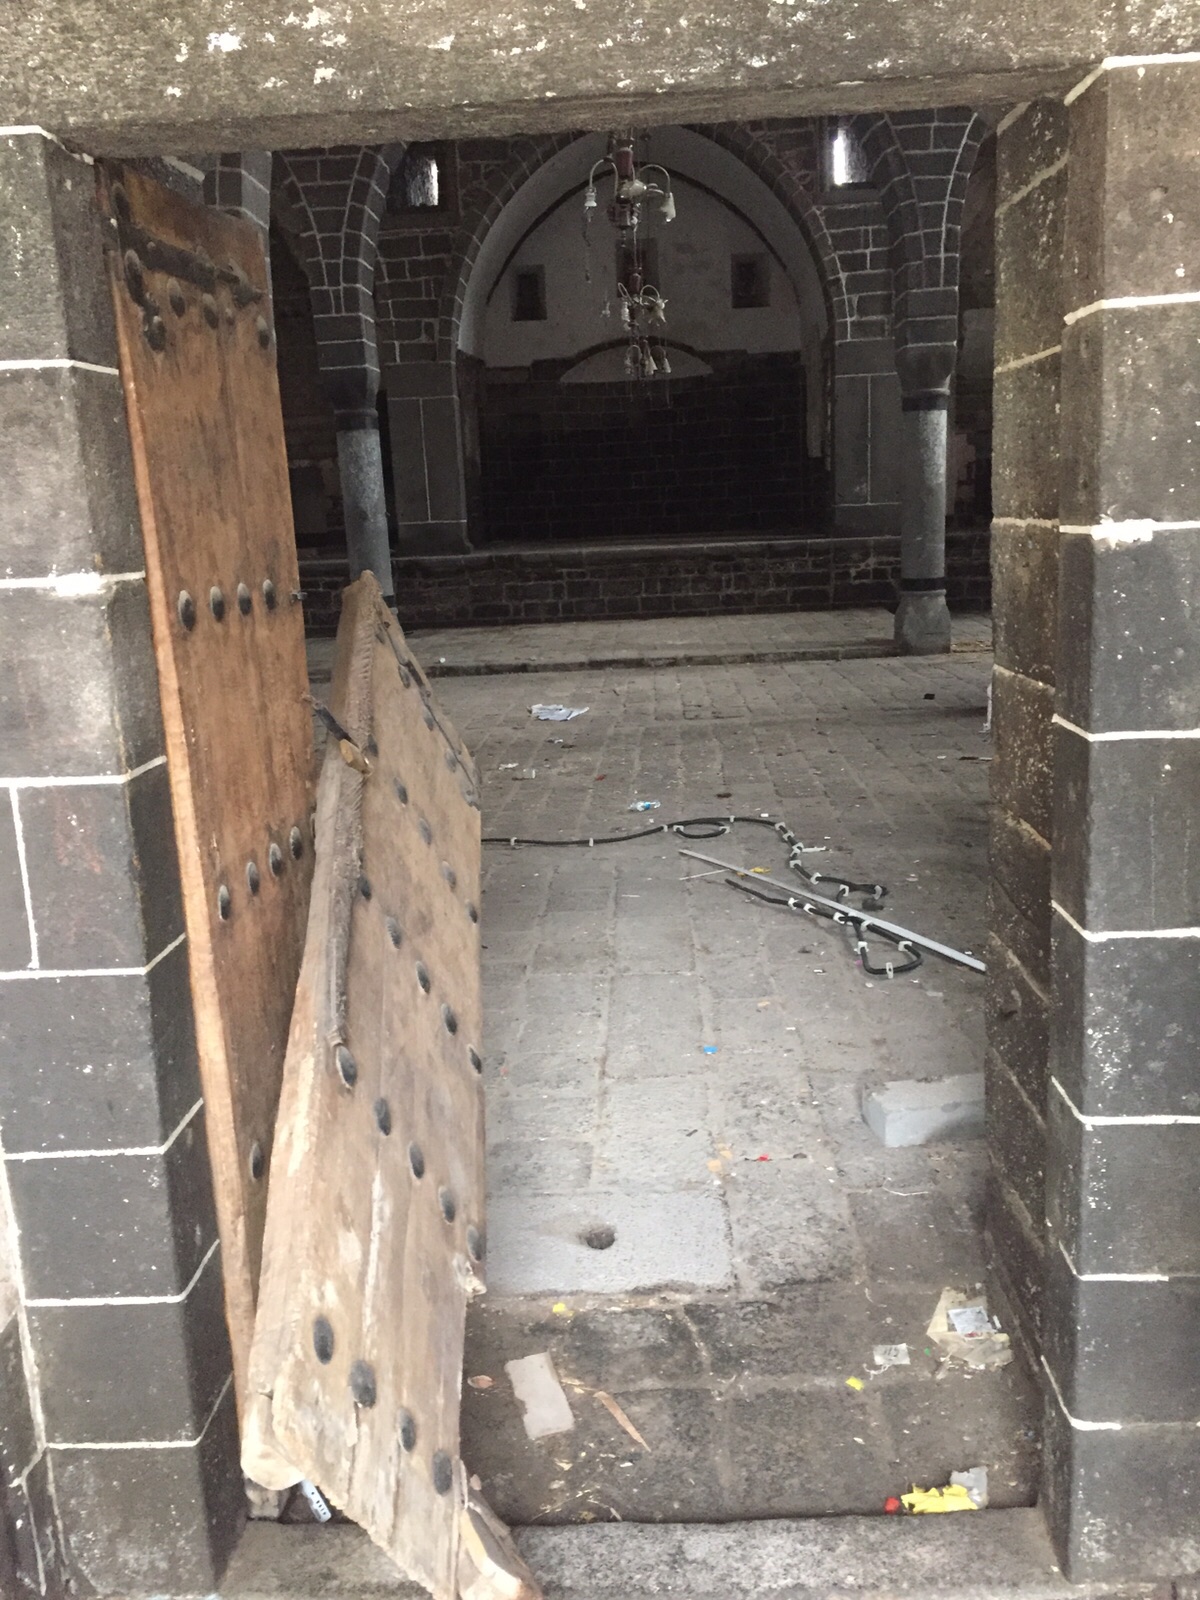 Ermeni Kilisesi’ymiş. Tahrip edilmiş, kapısı kırılmış. Görüntüsü hazin...